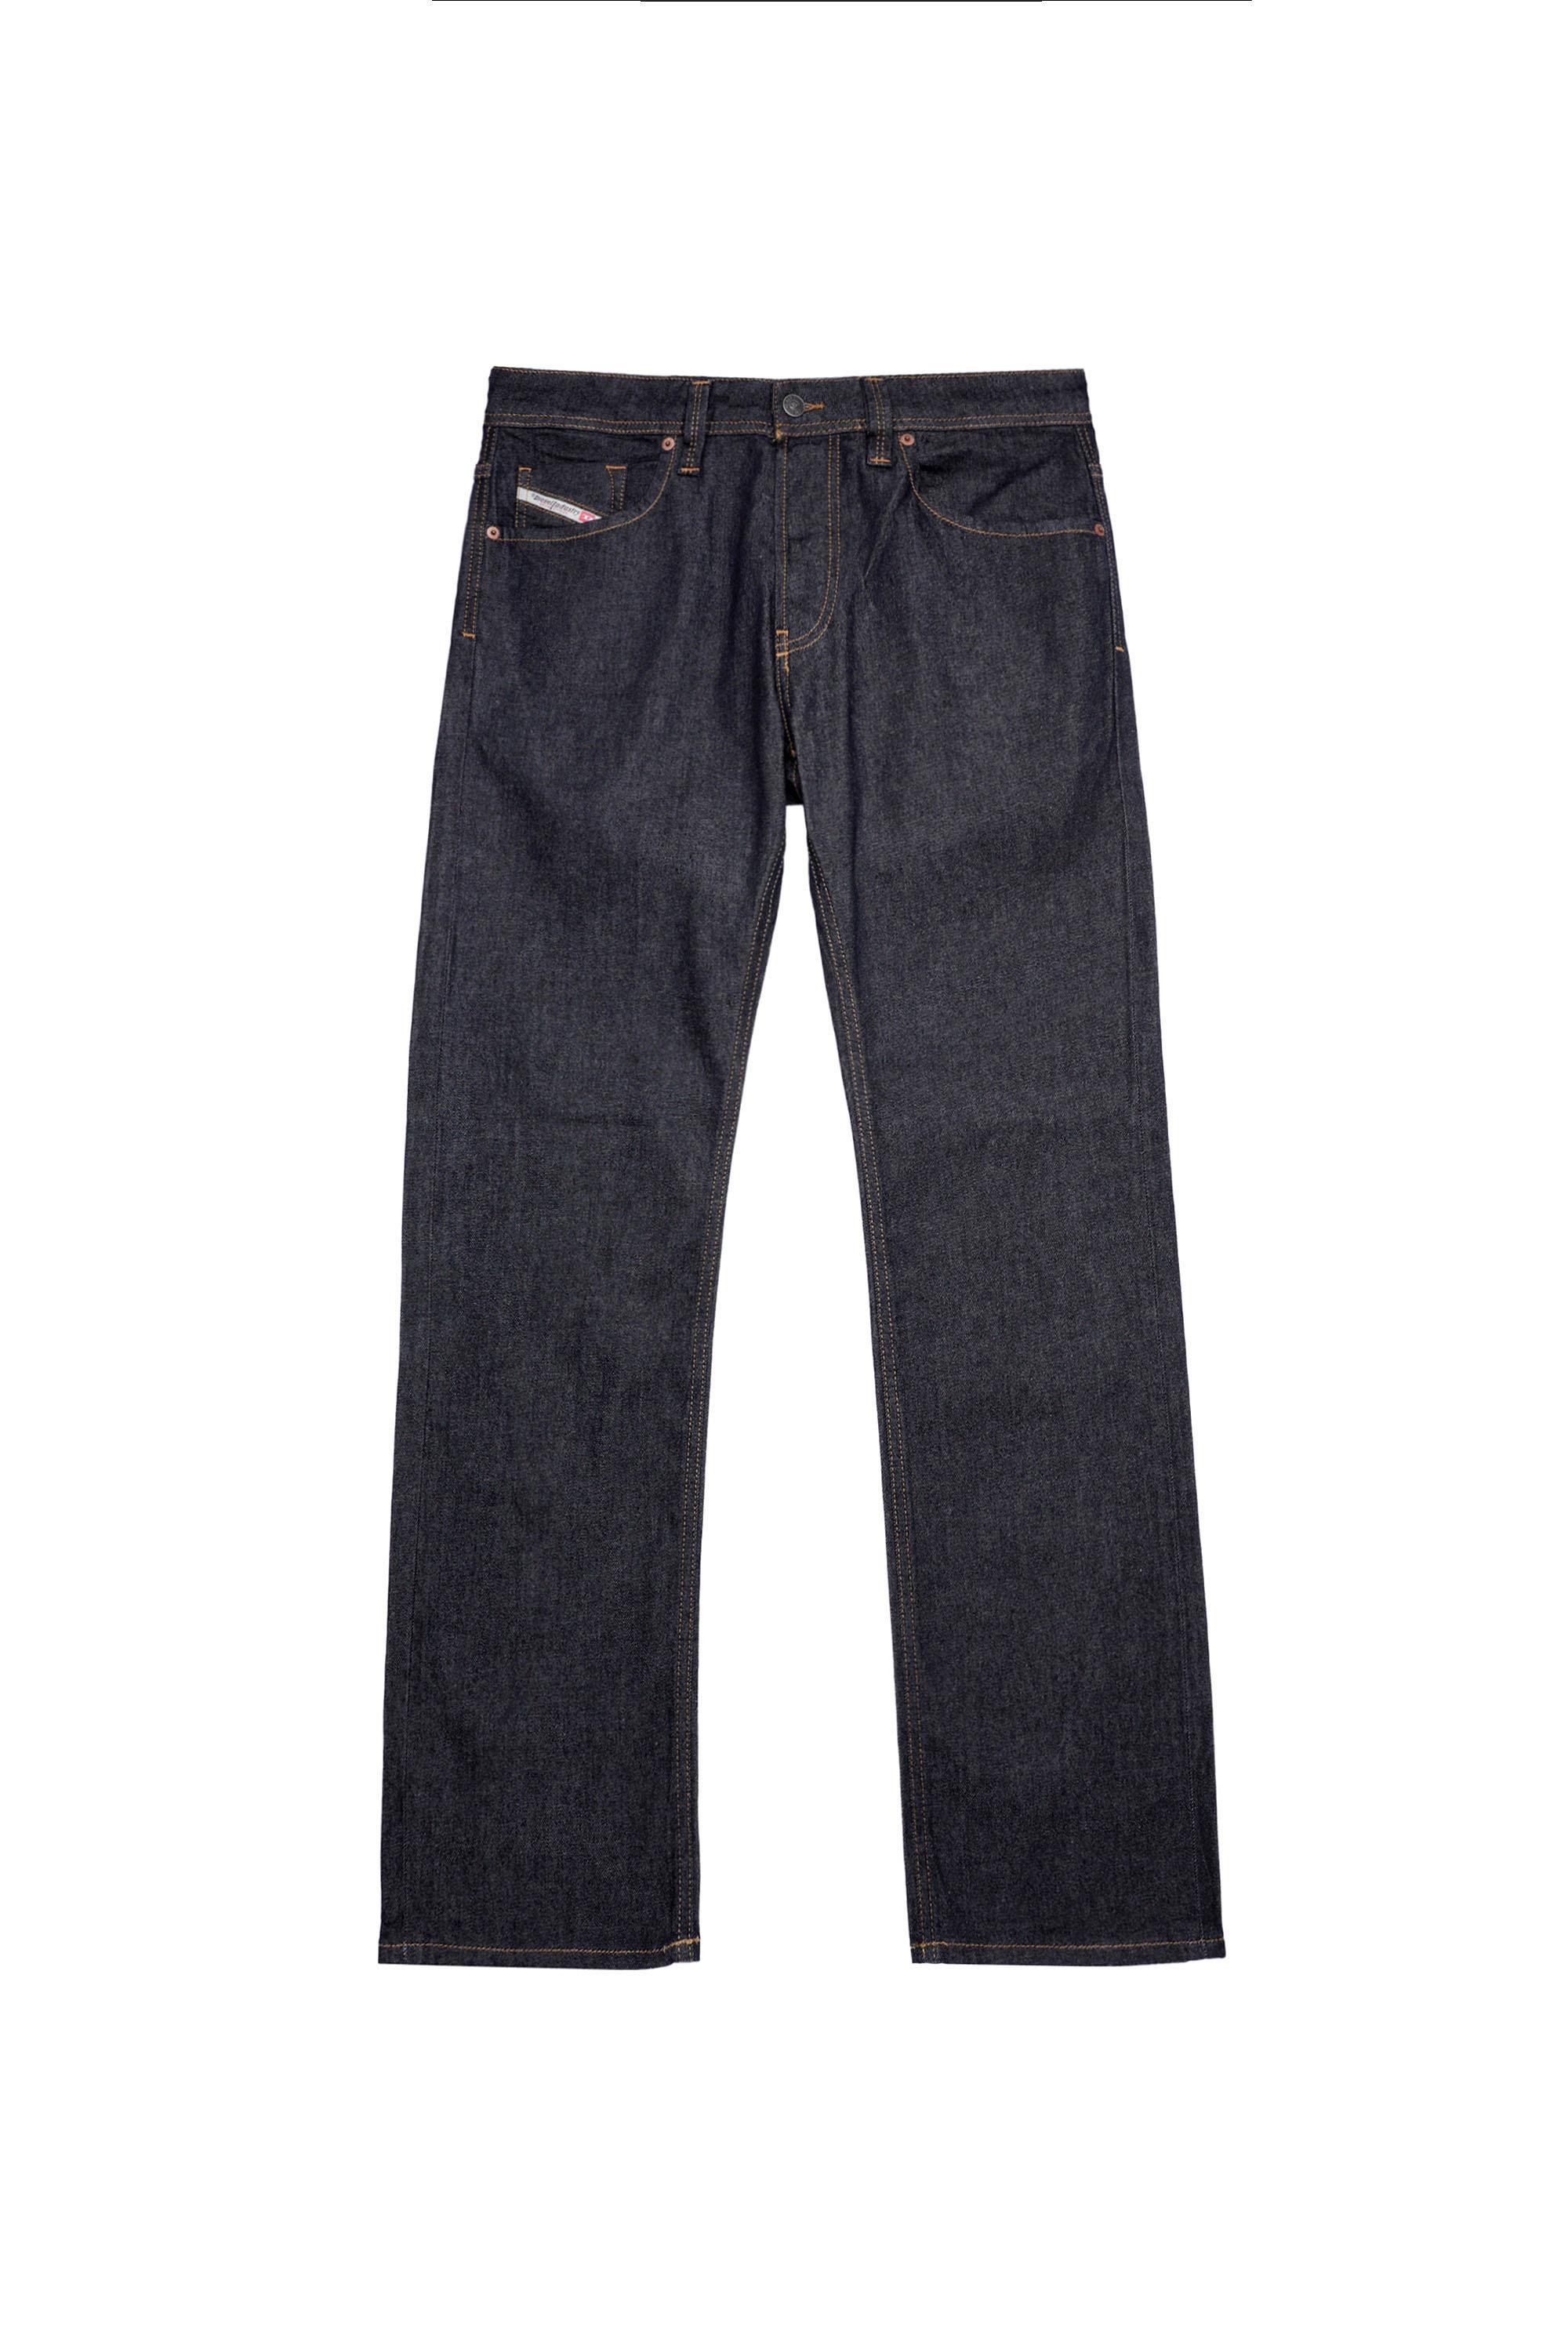 Larkee Straight Jeans 009HF: Dark blue, Stretch |Diesel